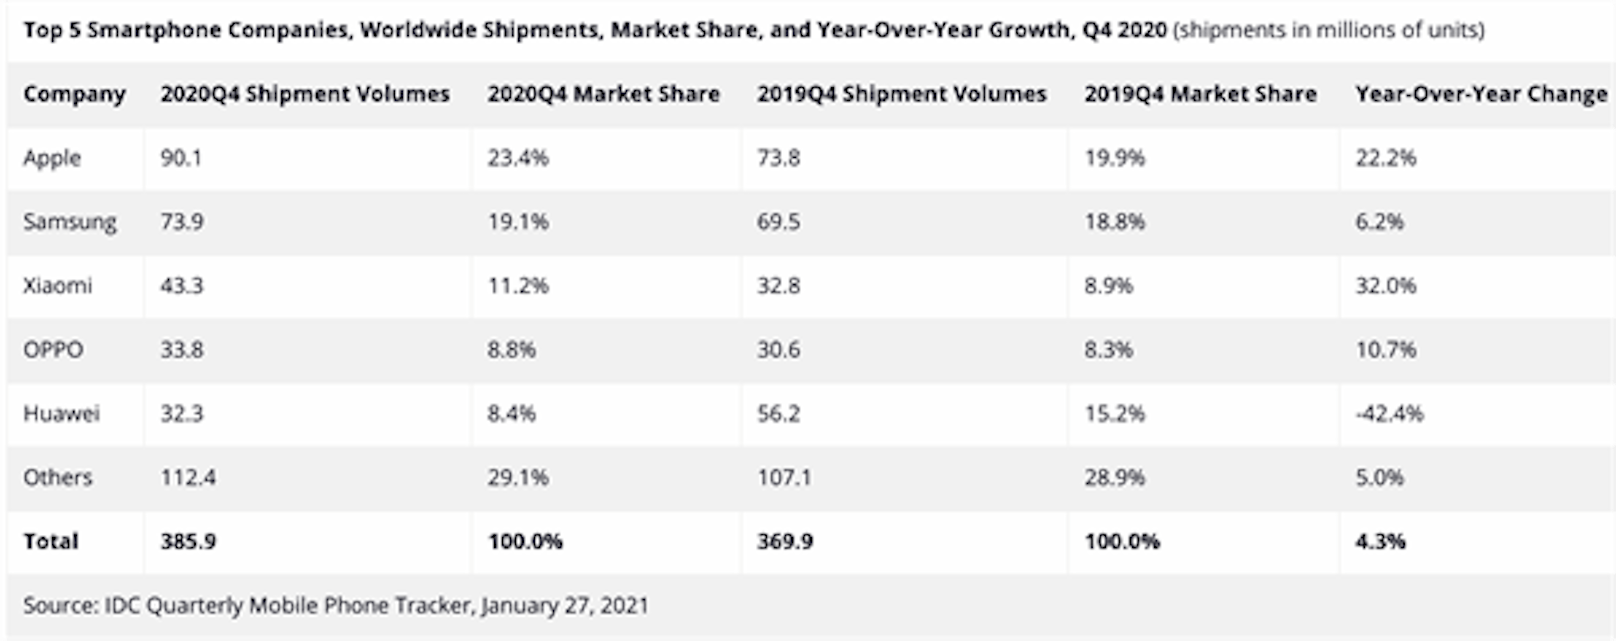 Marktforschungsergebnisse zeigen: Xiaomi in Q4 2020 die am schnellsten wachsende Smartphone-Marke.